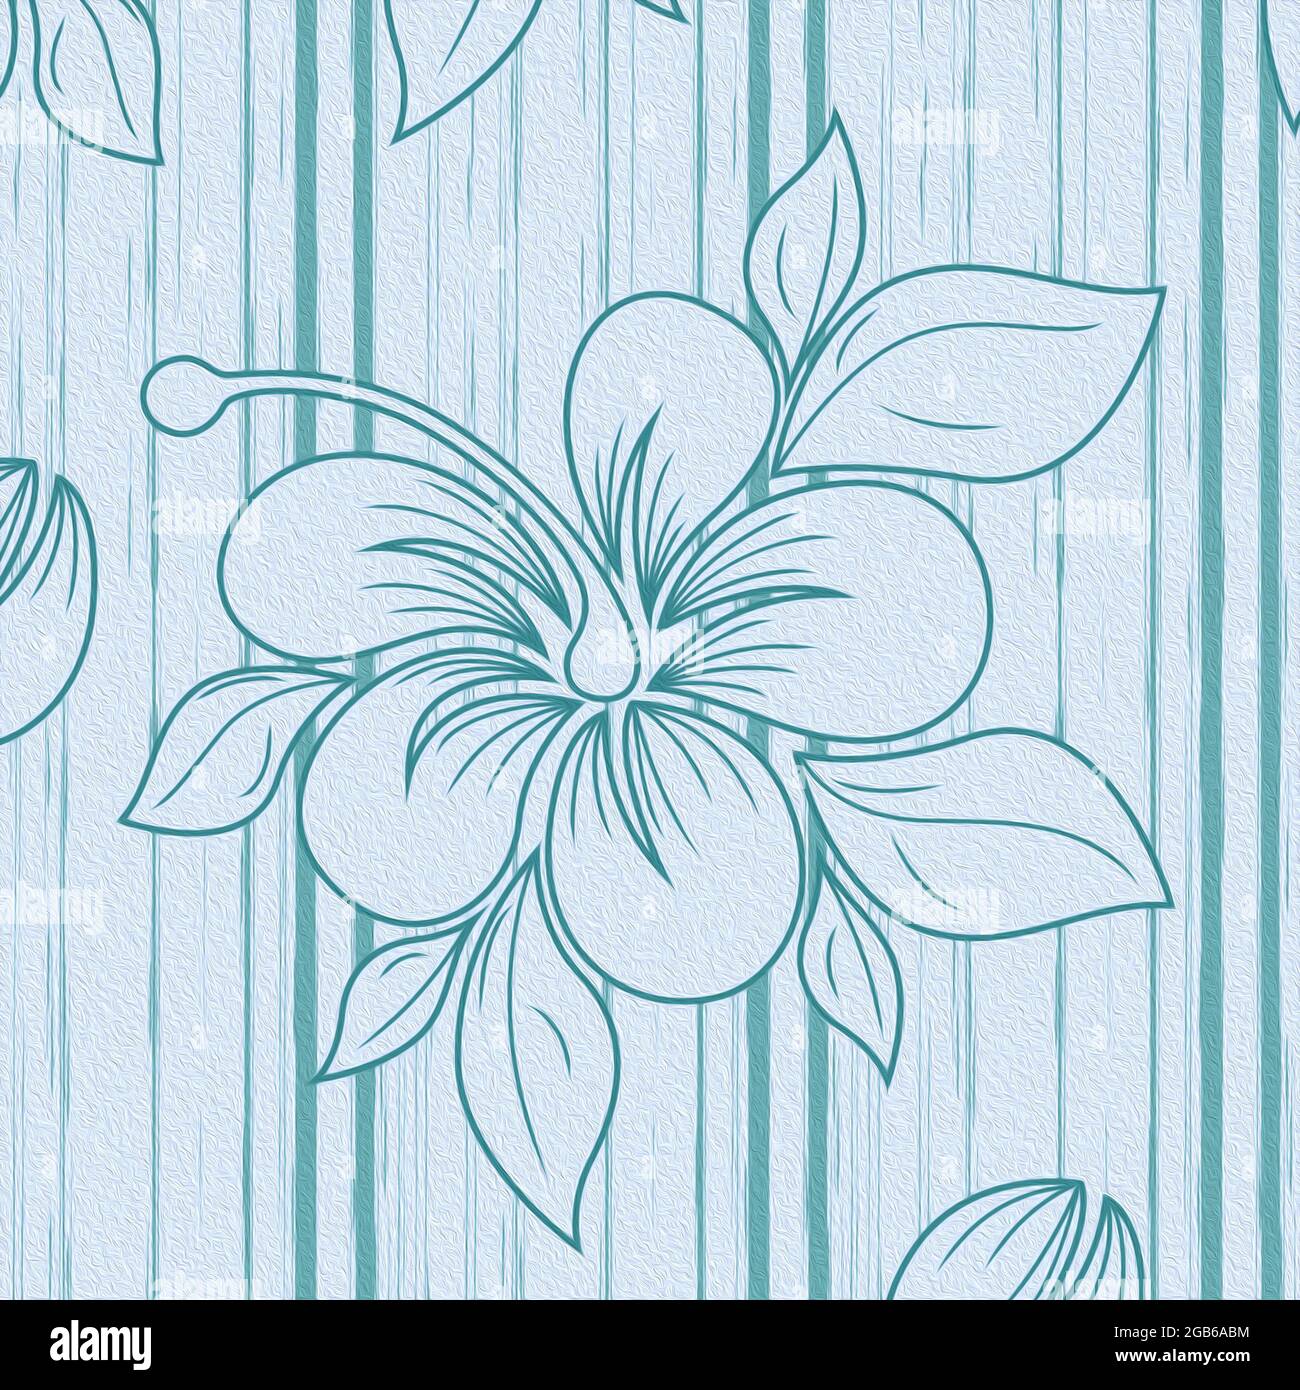 Delicato motivo floreale mutato nei toni del blu e del bianco, raffigurato come una texture di tessuto Foto Stock